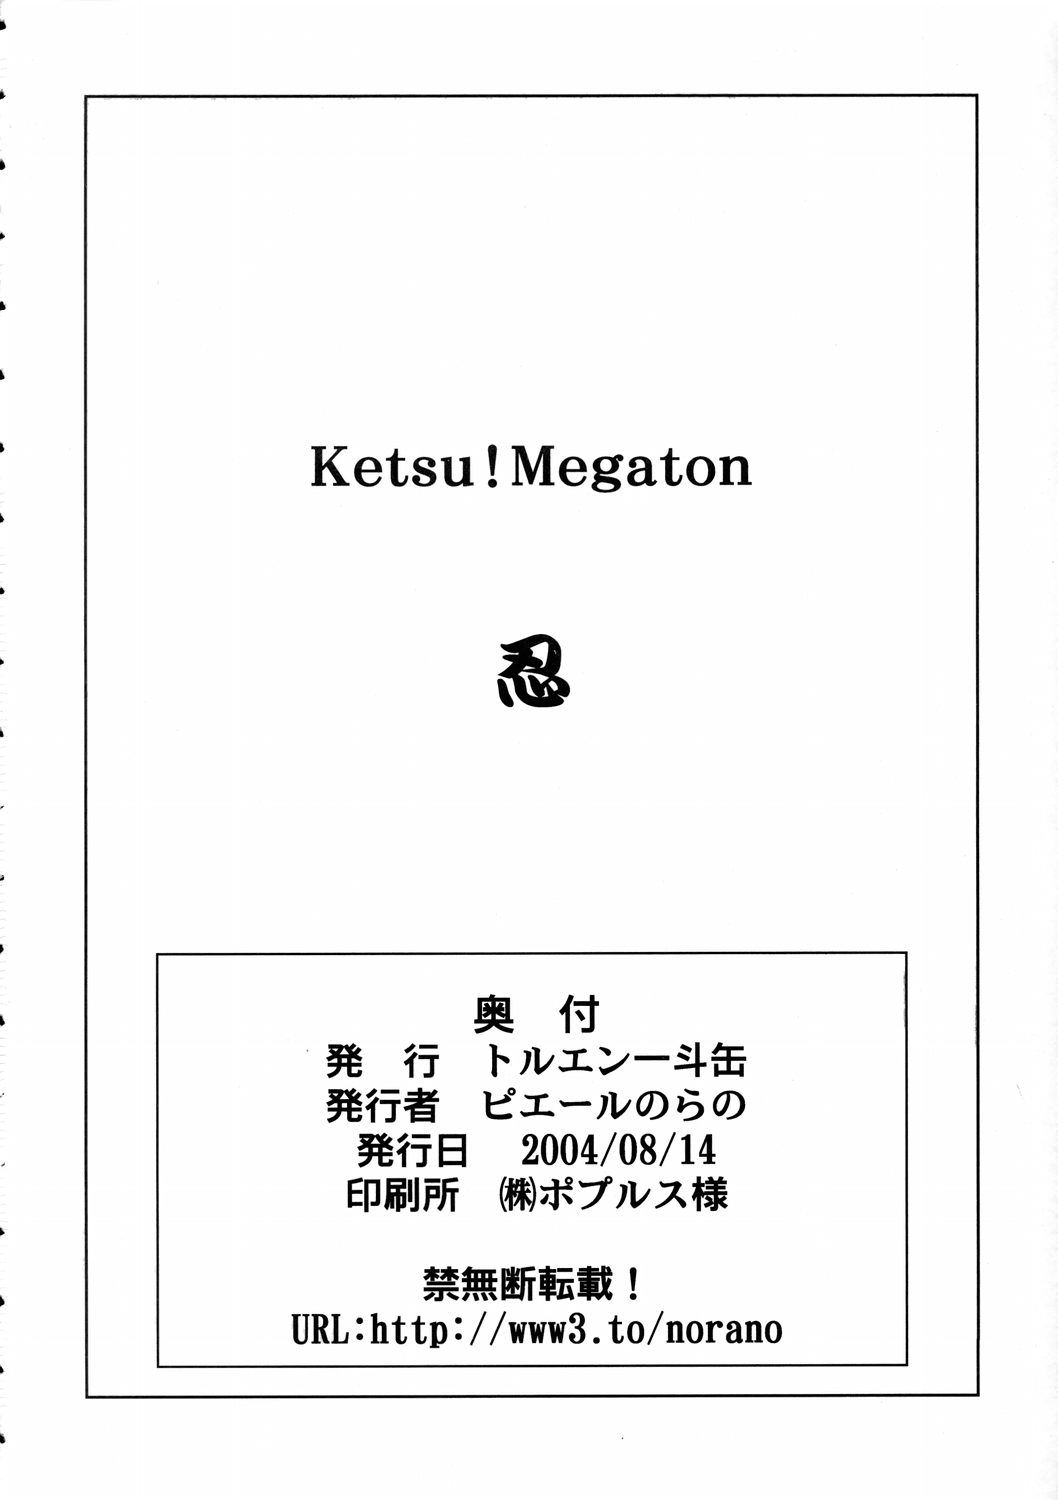 (C66) [トルエン一斗缶 (ピエールのらの)] KETSU!MEGATON 忍 (ナルト)